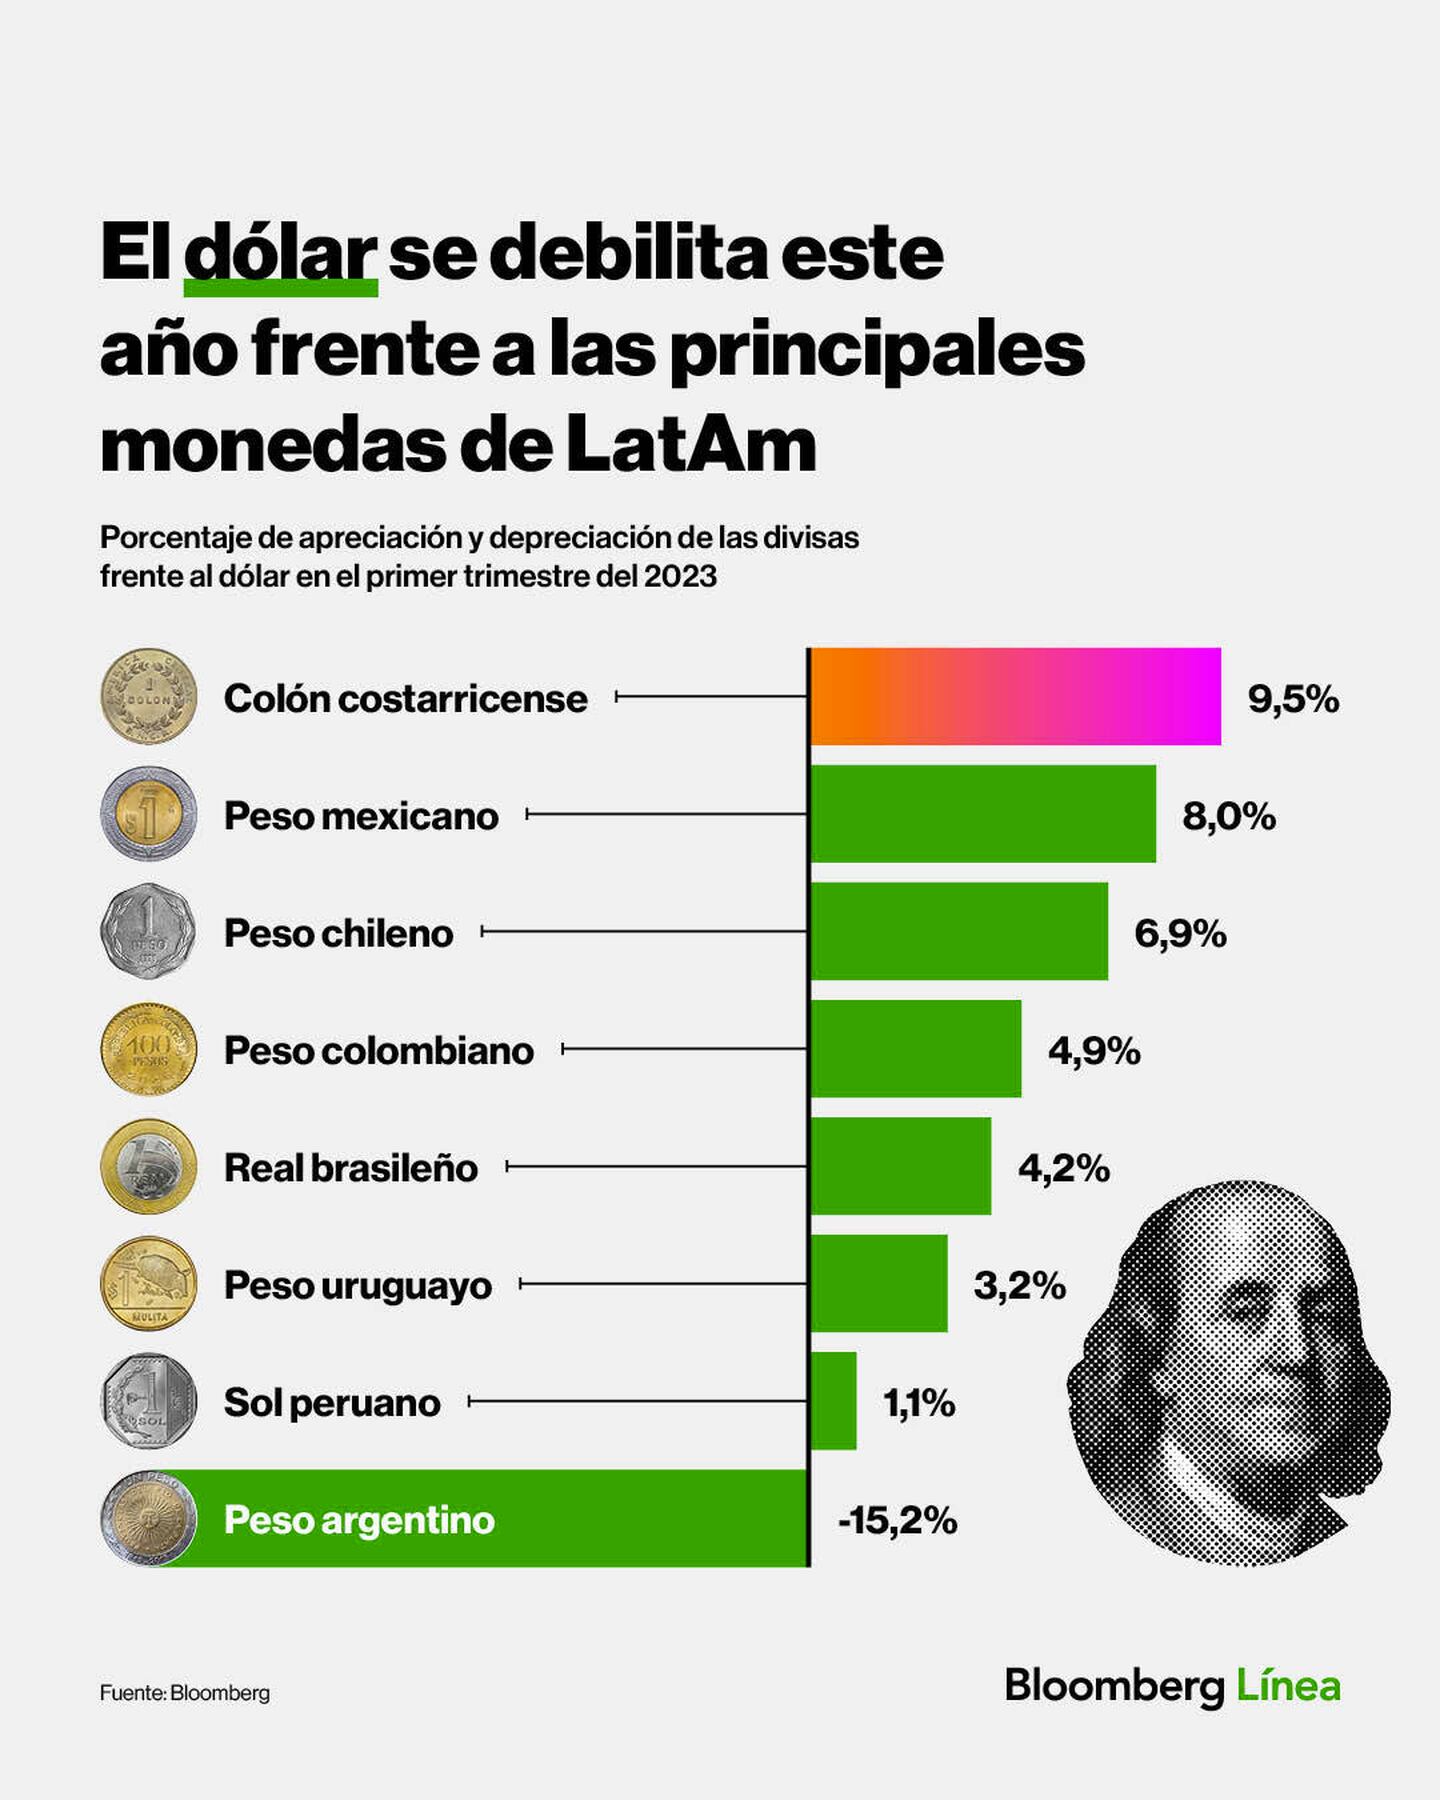 Peso argentino, a contramanodfd